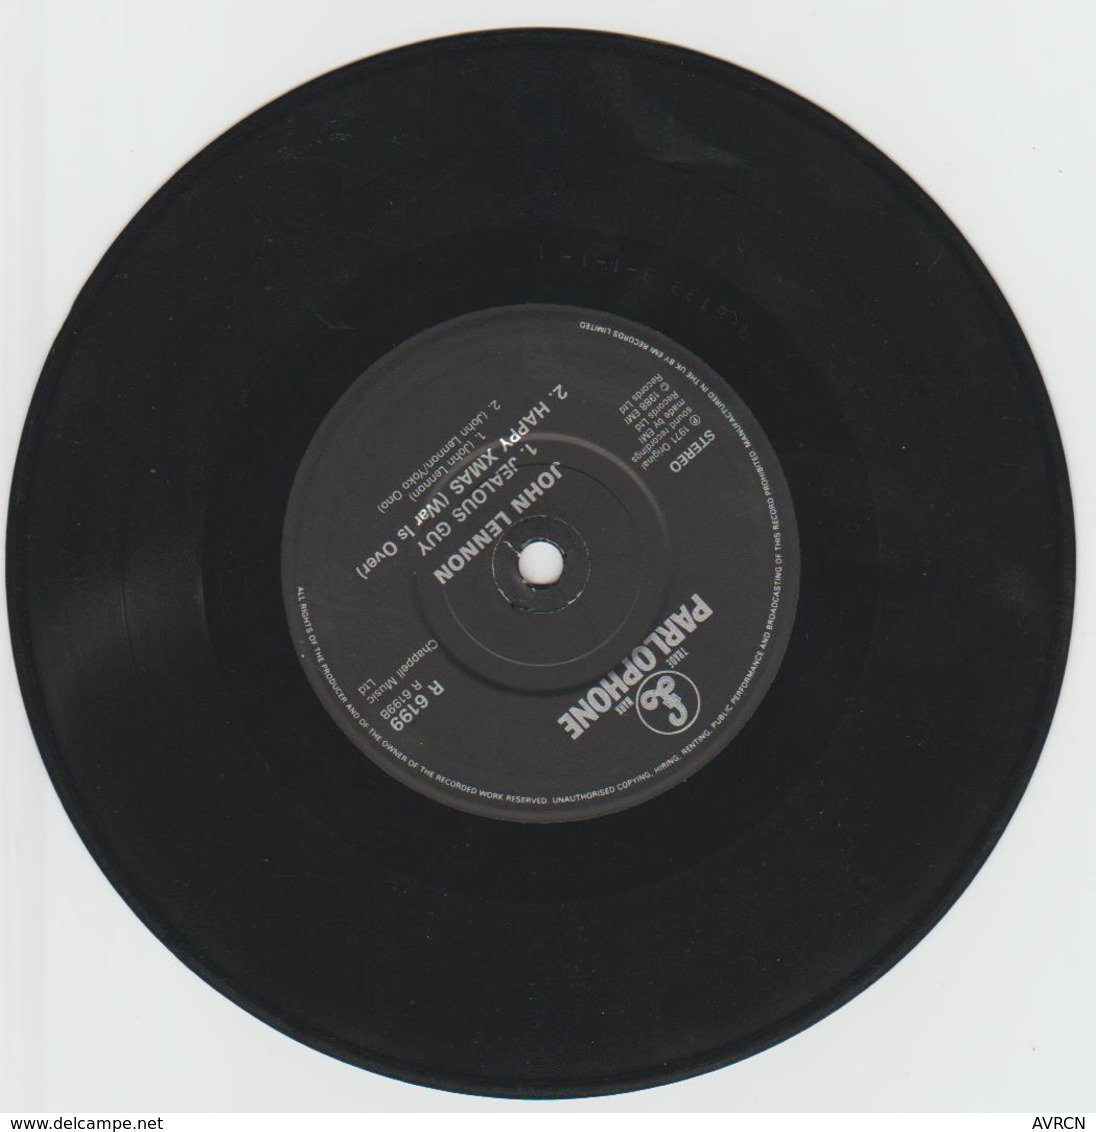 IMAGINE – John LENNON – PARLOPHONE R 6199 - 1971- Réservé Radios . - Editions Limitées